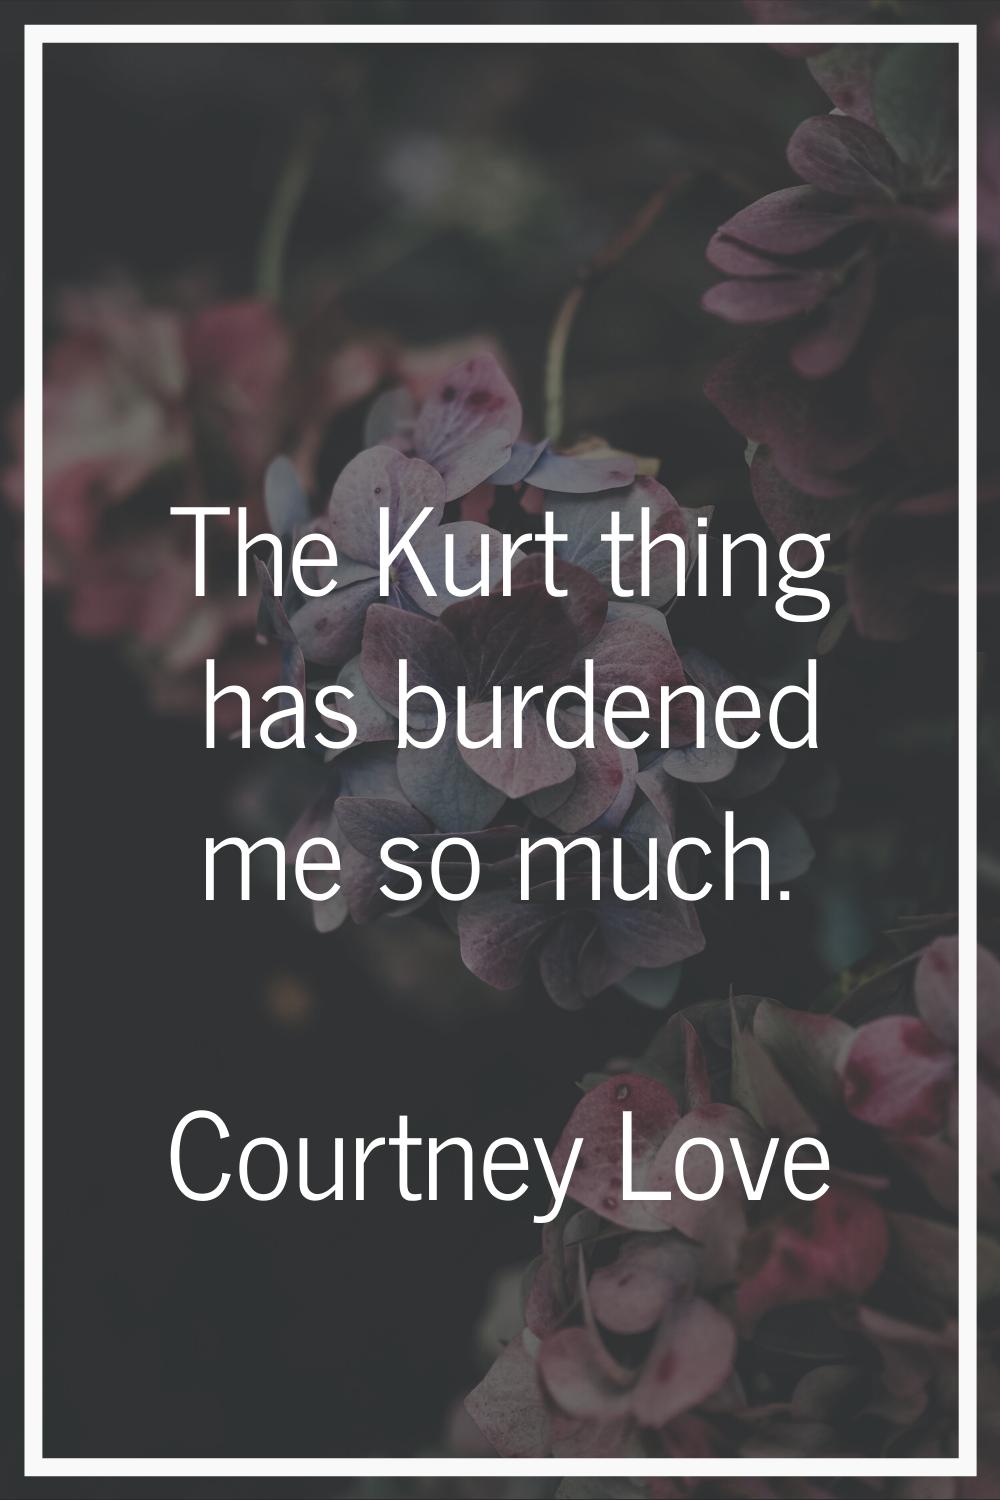 The Kurt thing has burdened me so much.